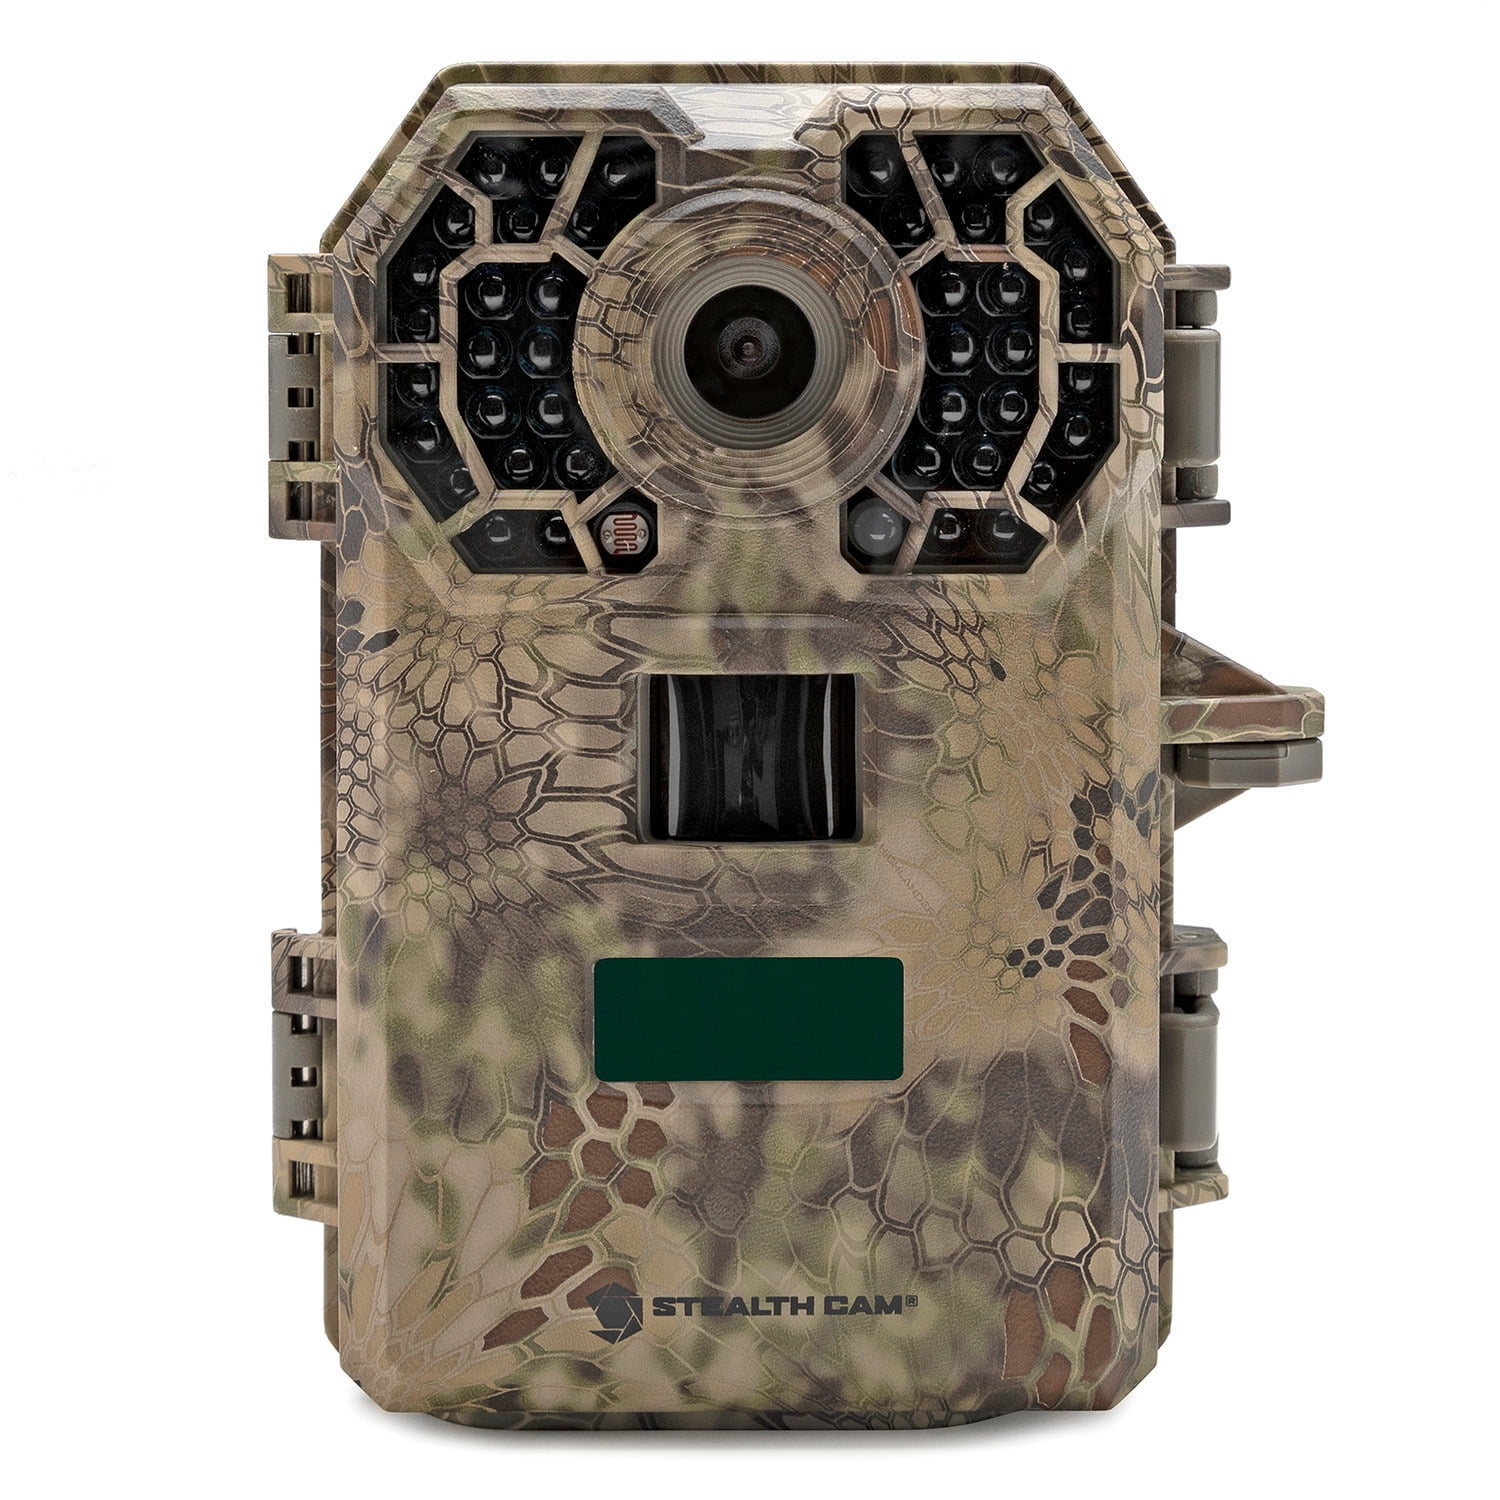 5 3/8" Stealth Cam Infrared Scouting Camera STC-G42NG Model G42NG NO GLO Camera 